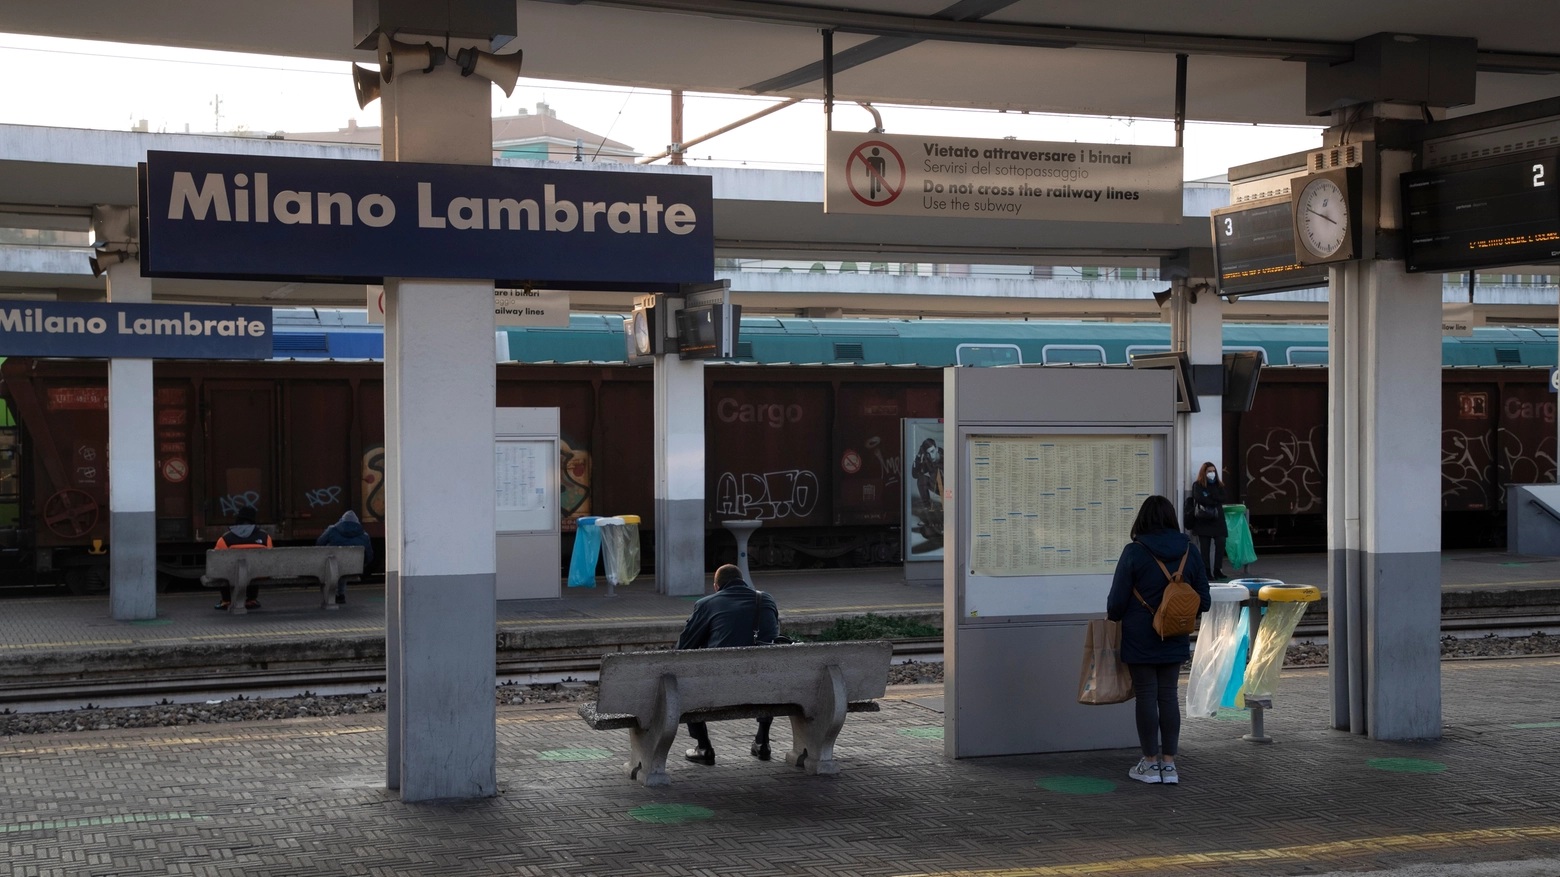 La stazione di Milano Lambrate